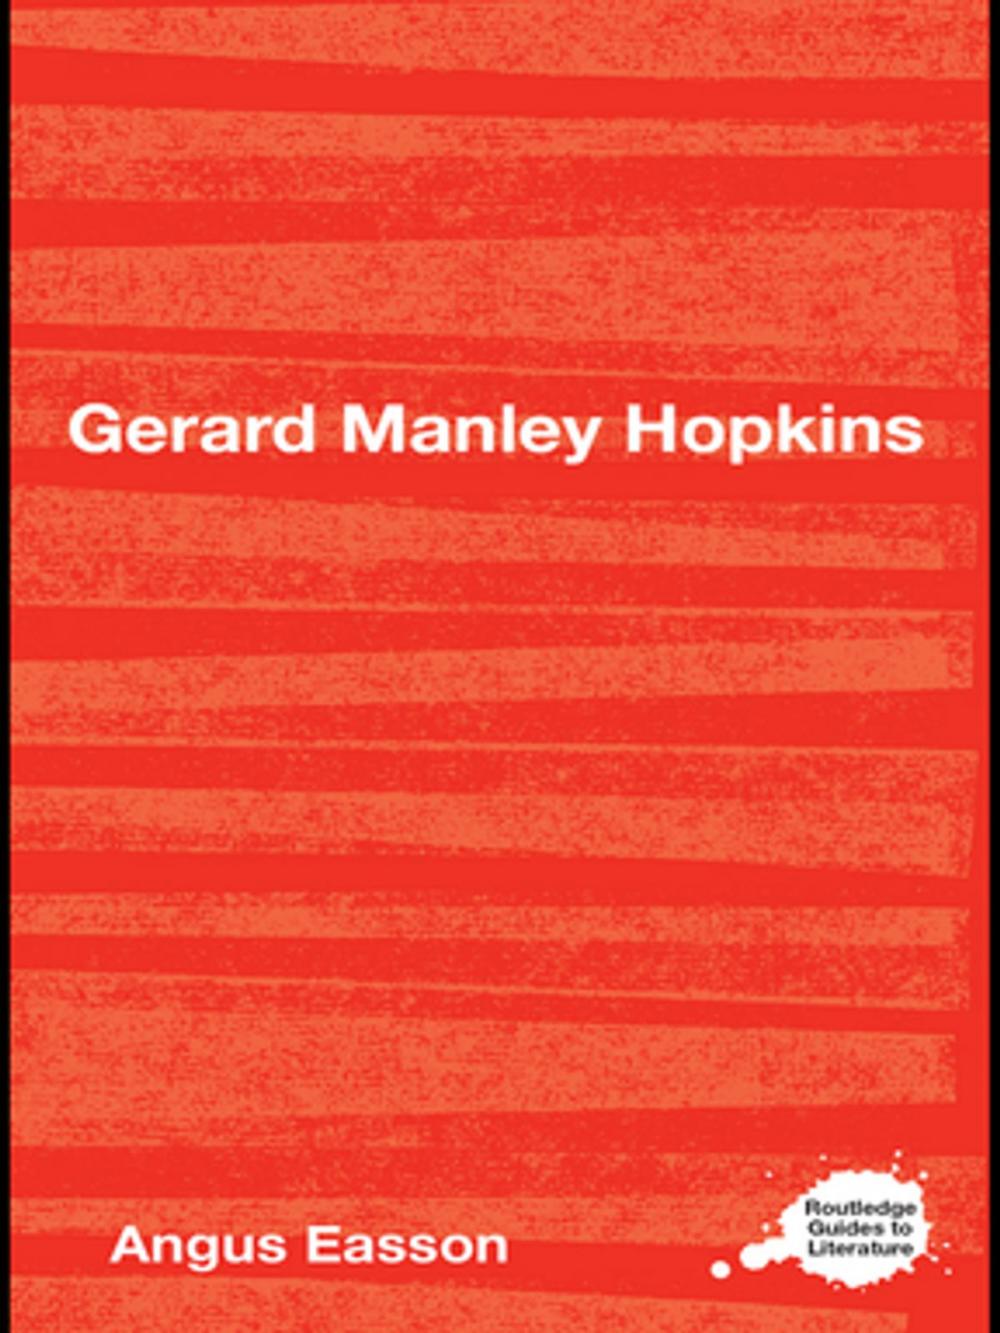 Big bigCover of Gerard Manley Hopkins